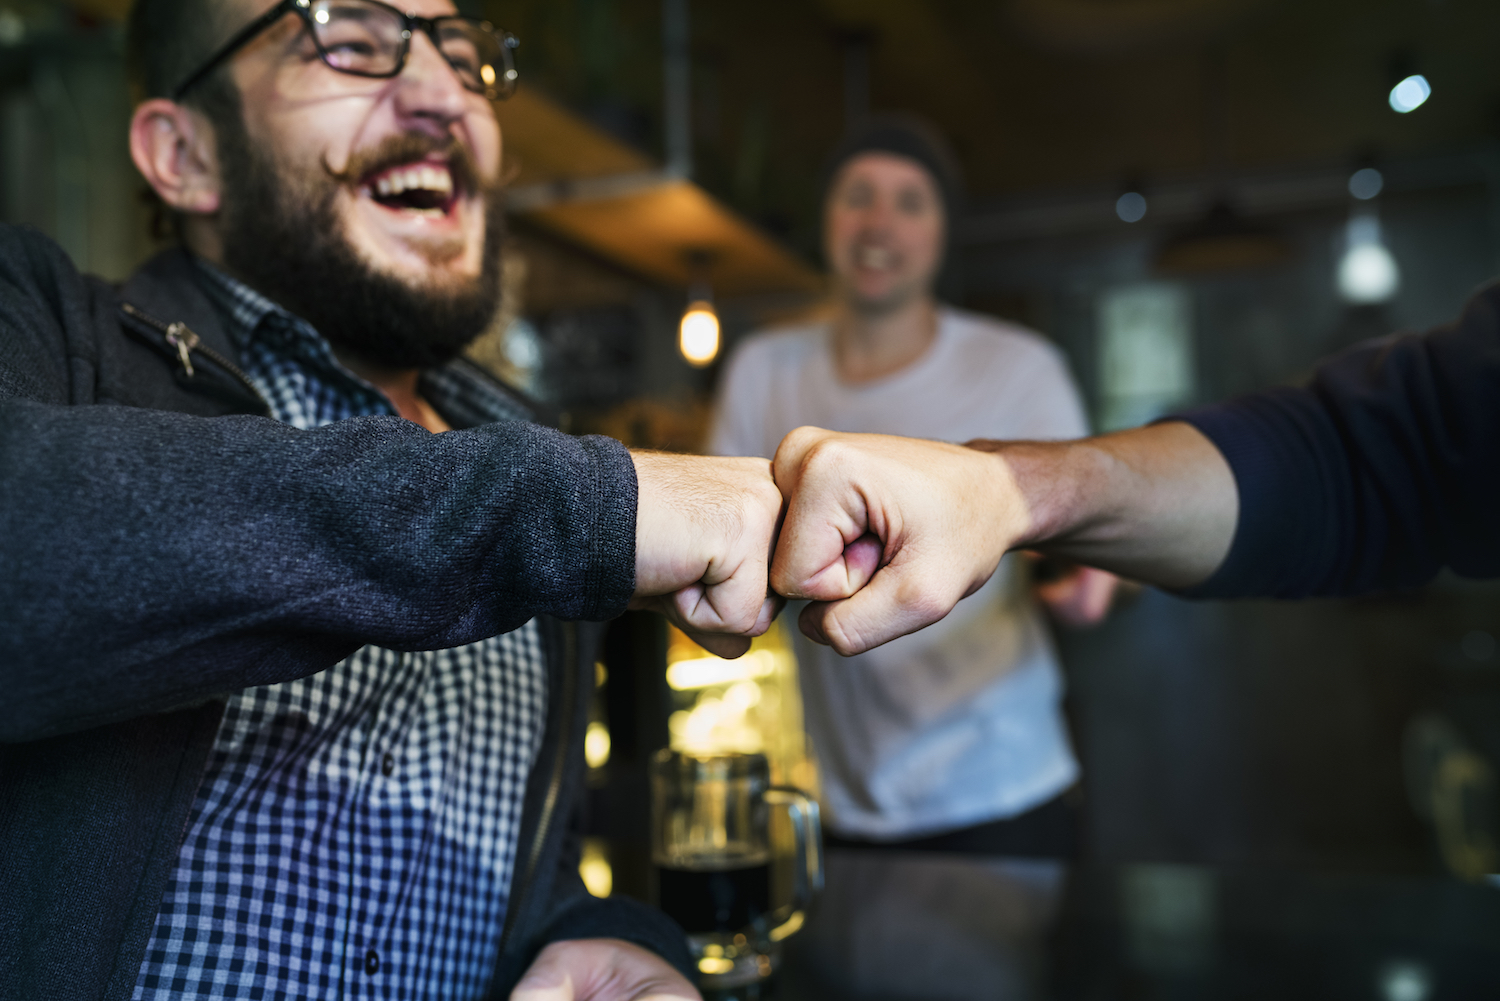 Men fist bumping in a bar, enjoying a drink.